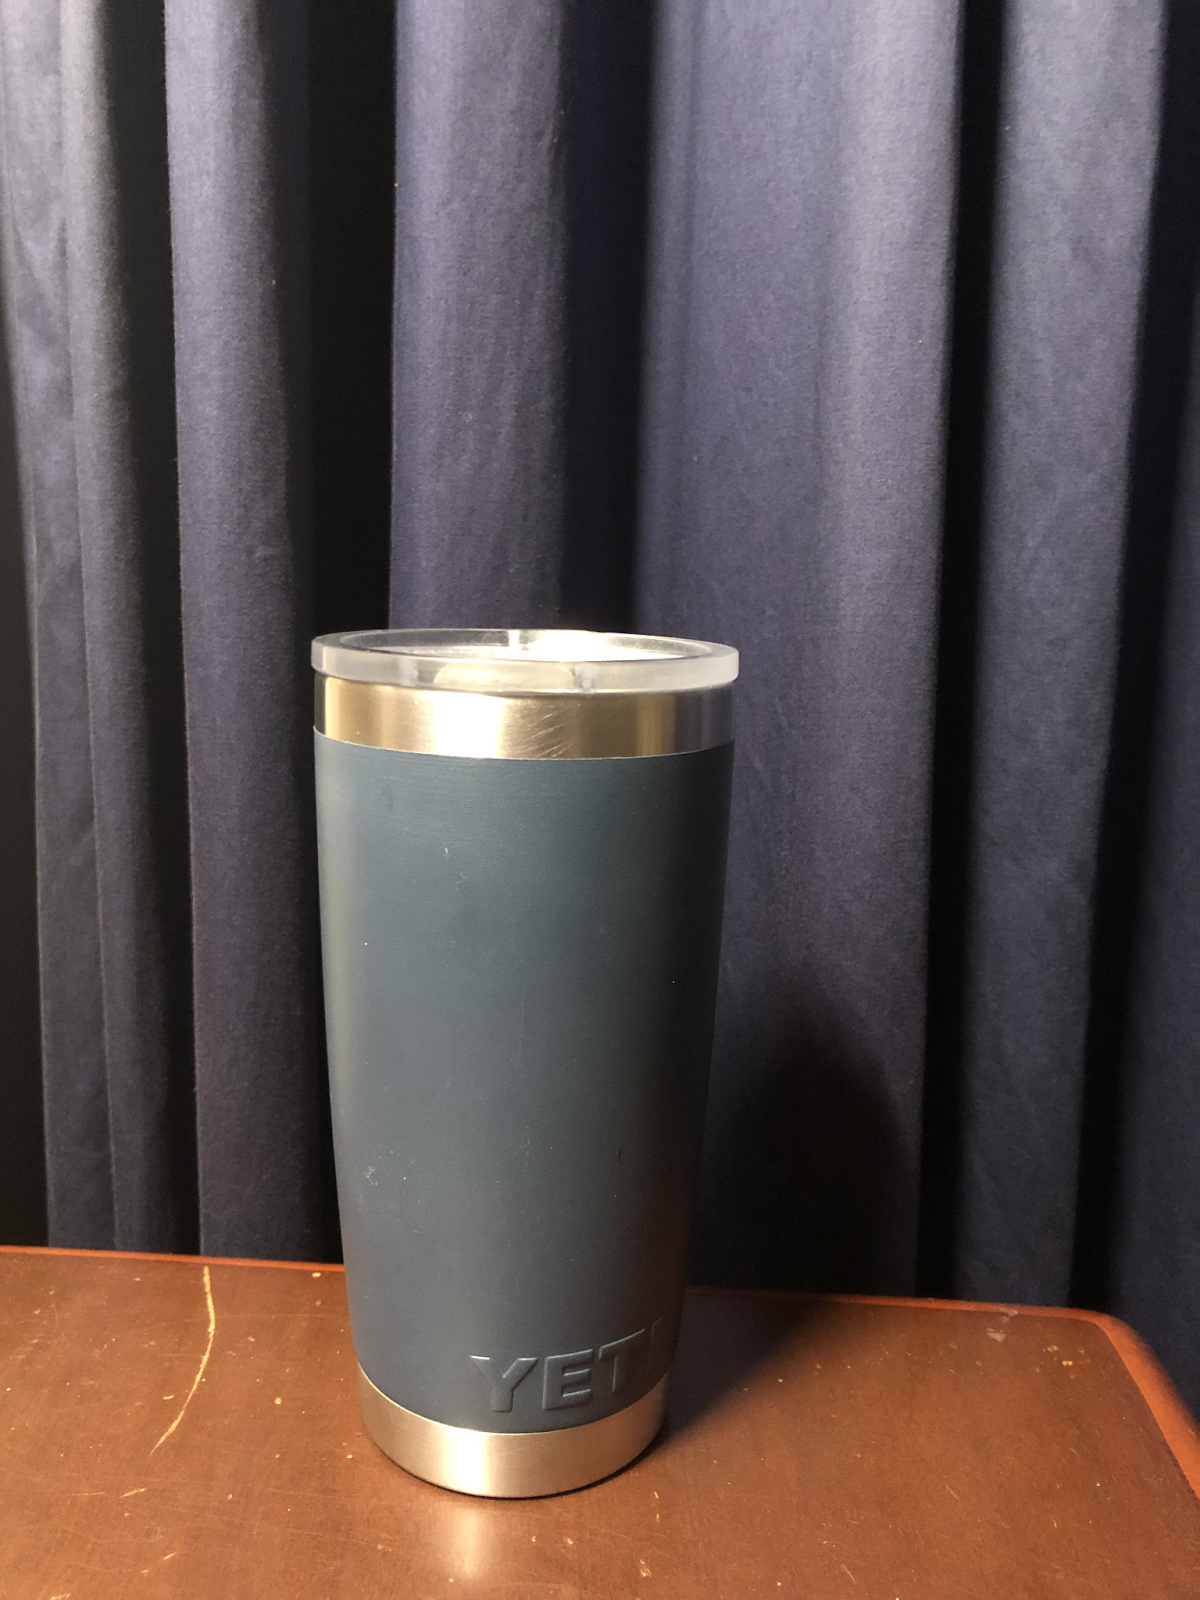 Life Vacuum Cup Bottiglia D'acqua In Acciaio Inossidabile La Cosa Importante Nella è Avere Un Grande Scopo E La Determinazione Per Raggiungerlo verde 